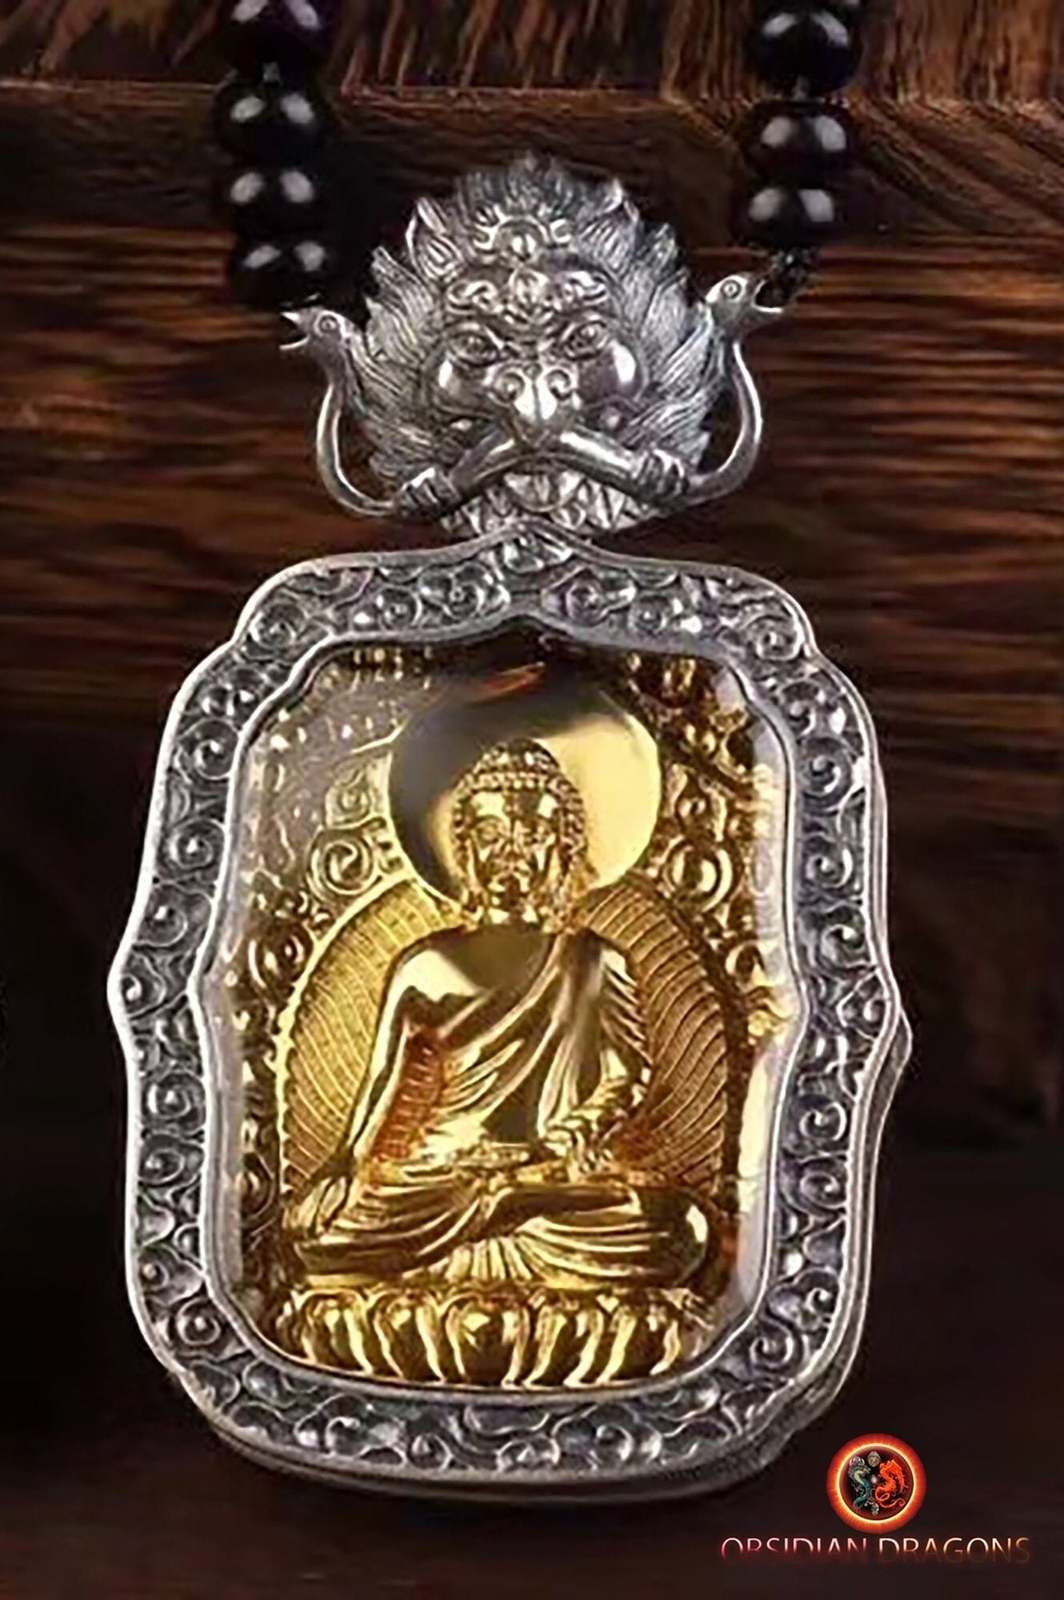 Primary image for Sakyamuni Buddha pendant, esoteric vajrayana Buddhism protection amulet